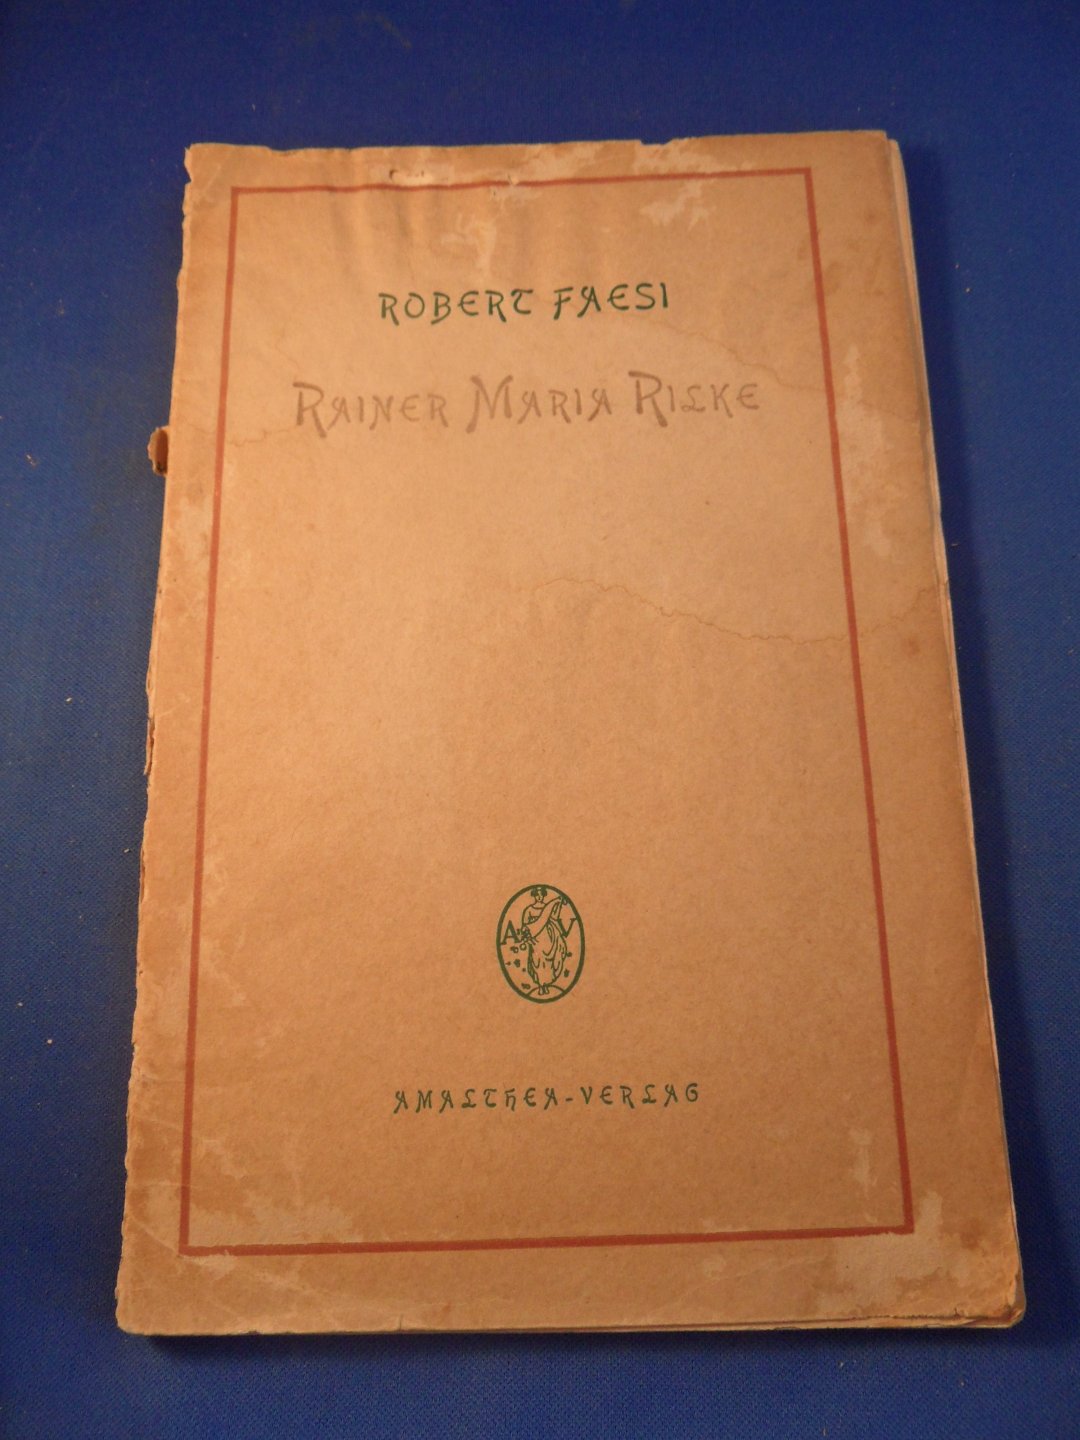 Faesi, Robert - Rainer Maria Rilke